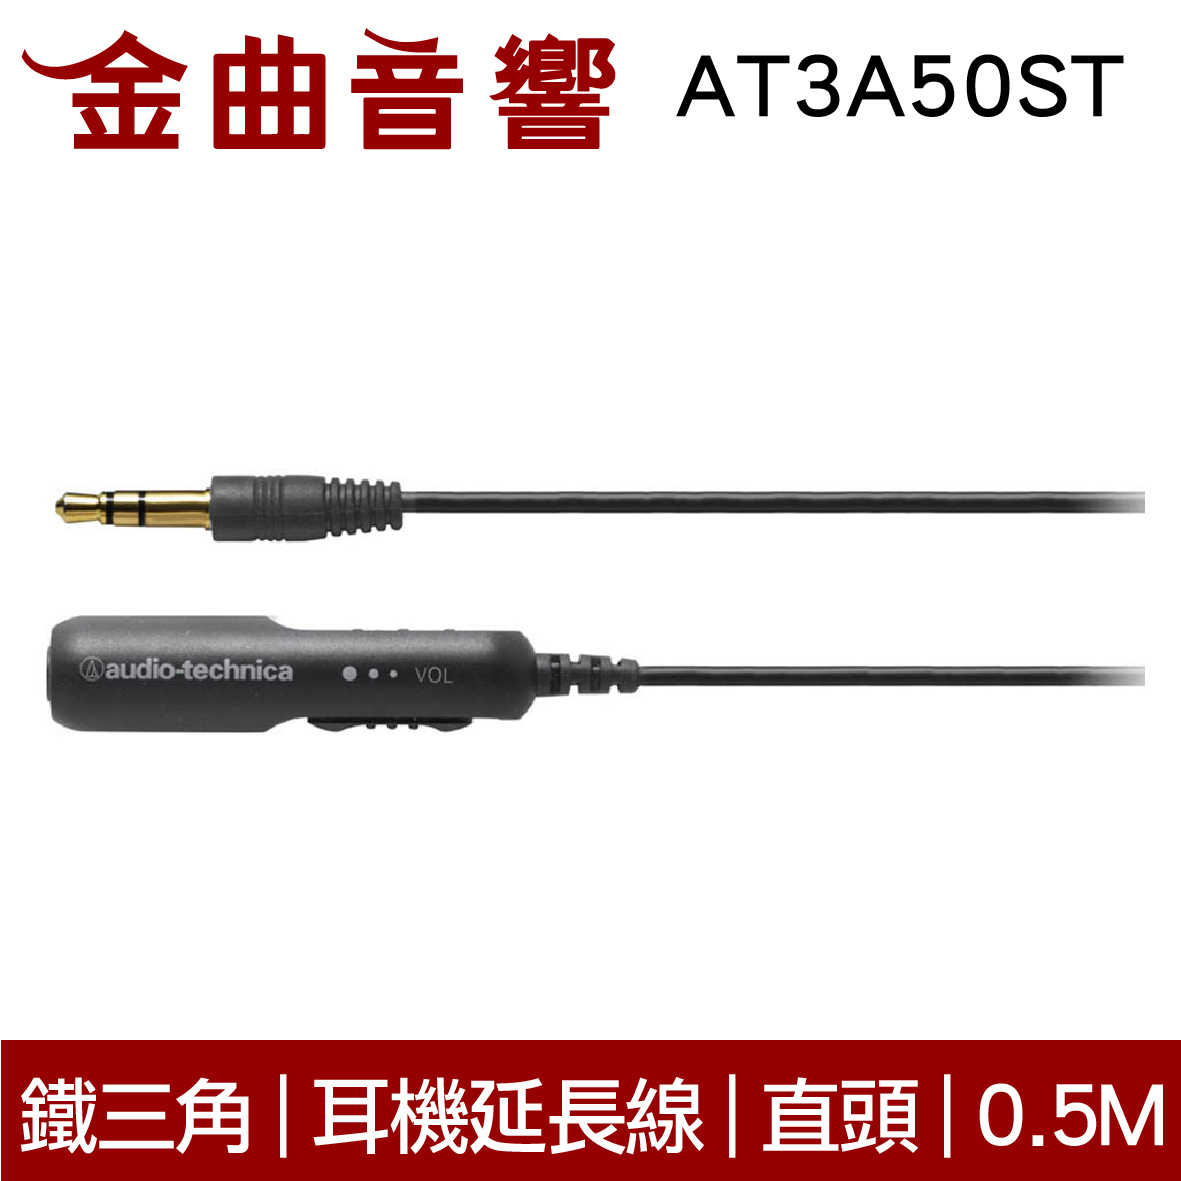 鐵三角 AT3A50ST 0.5M 黑白兩色 耳機延長線 高純度OFC導體 直頭線控｜金曲音響